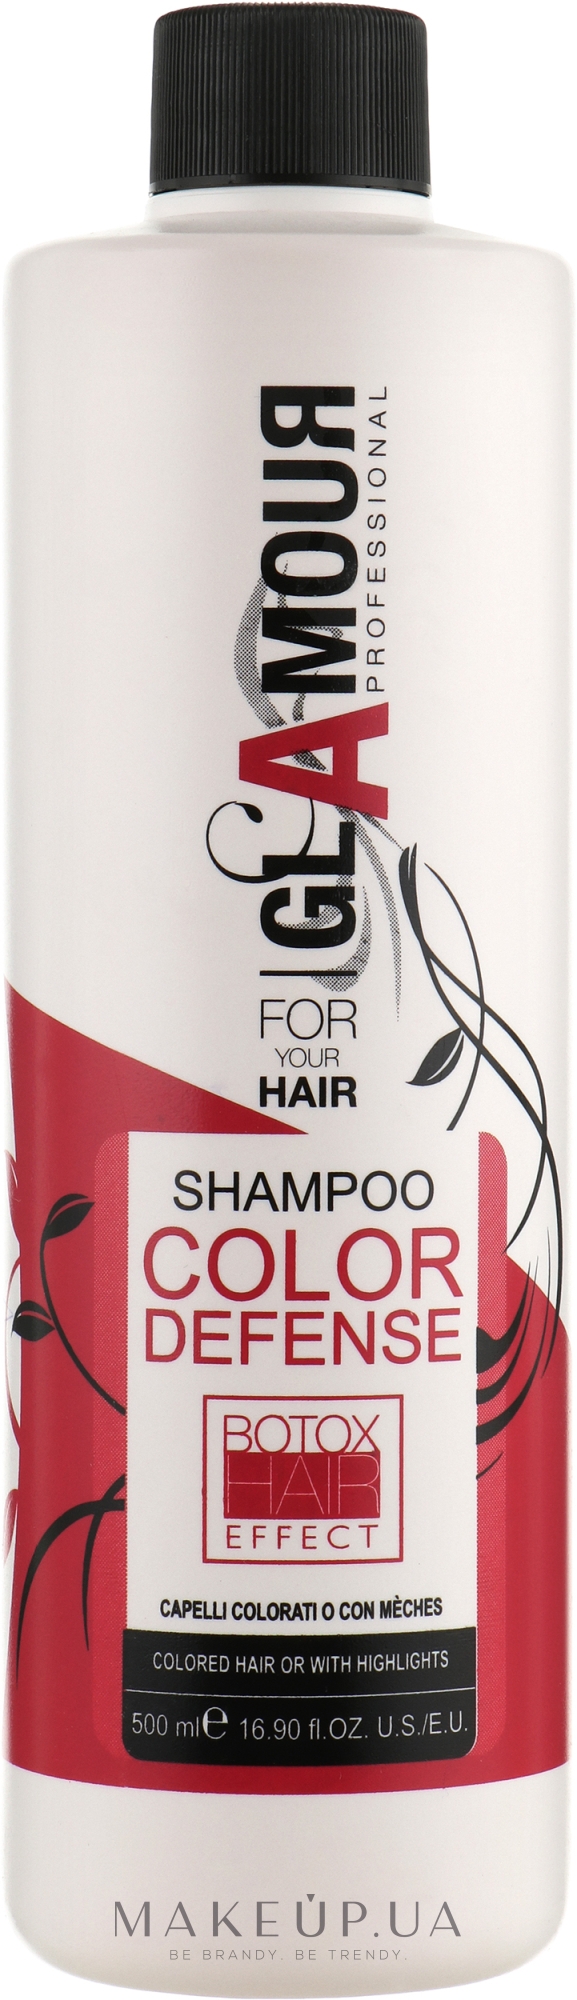 Erreelle Italia Glamour Professional Shampoo Color Defense - Erreelle Italia Glamour Professional Shampoo Color Defense — фото 500ml